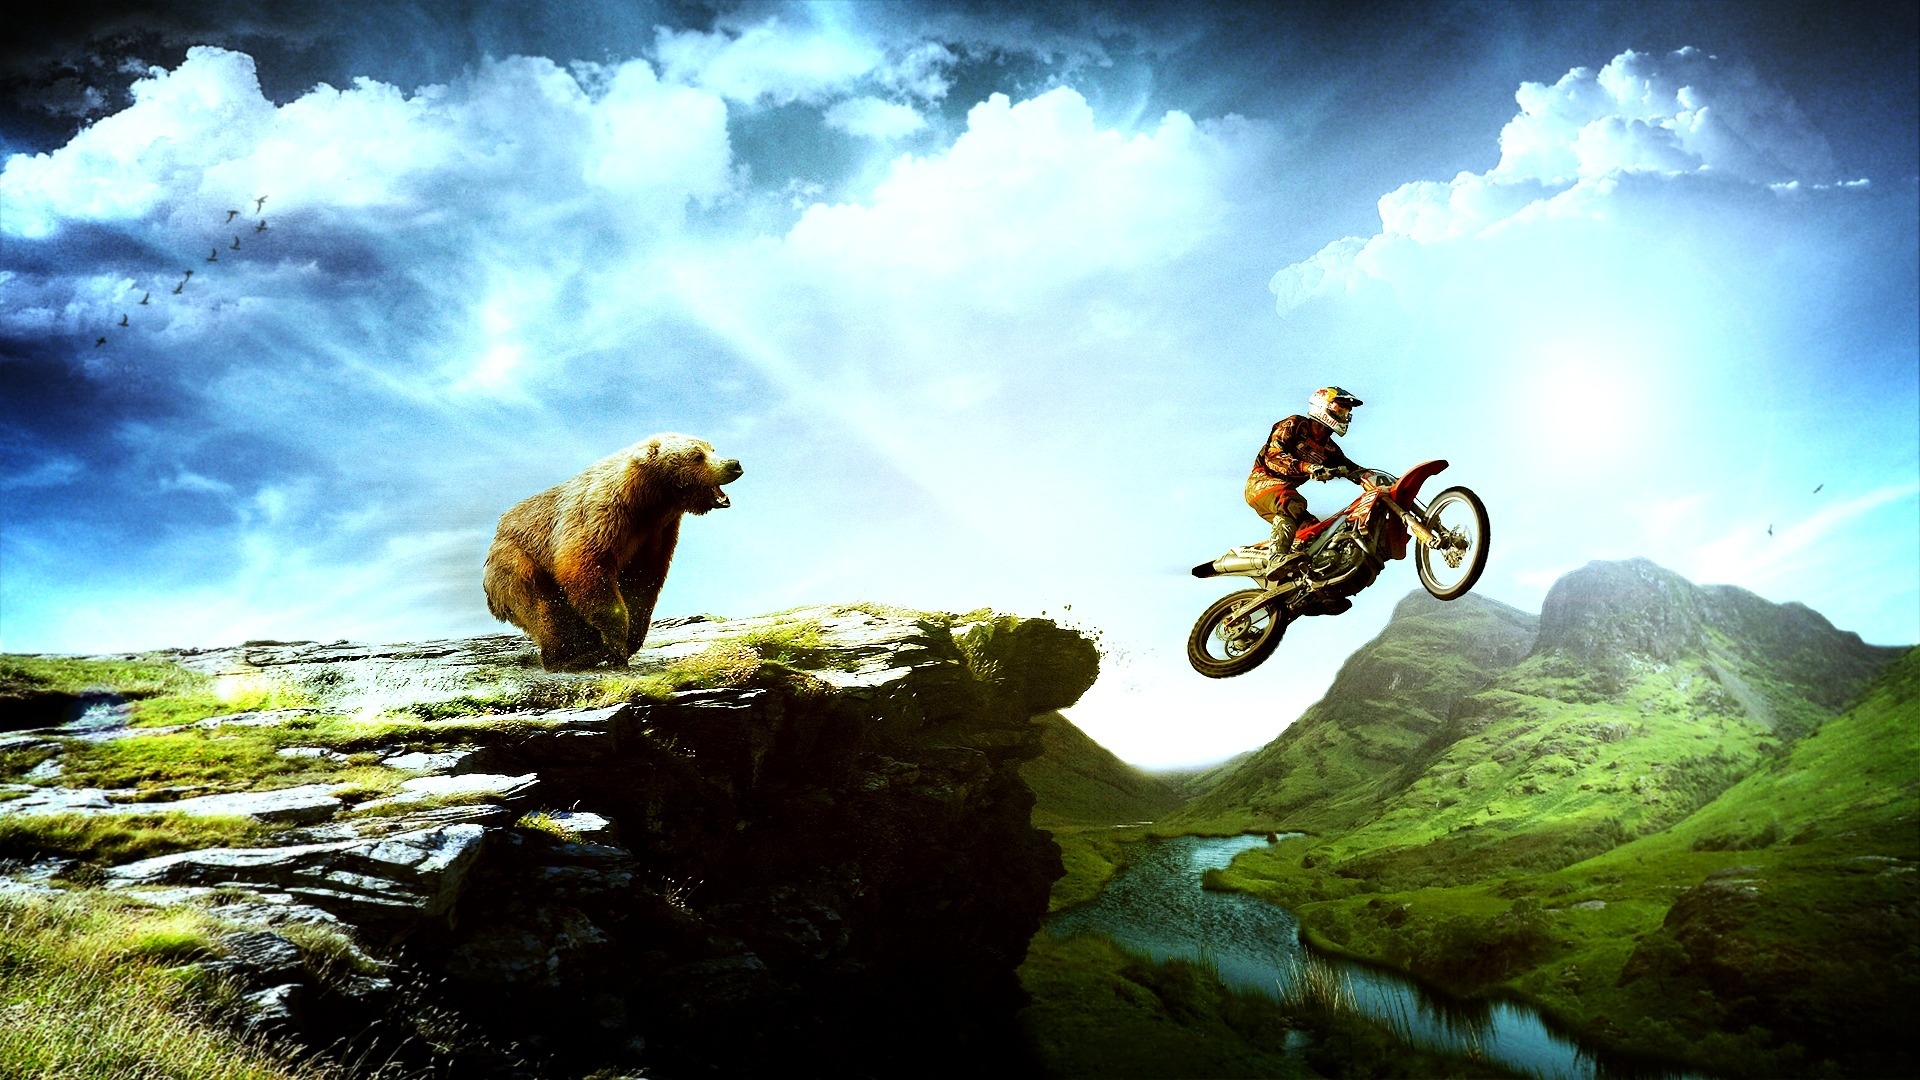 moto x play fondos de pantalla hd,naturaleza,vehículo,cielo,deporte extremo,bicicleta de montaña